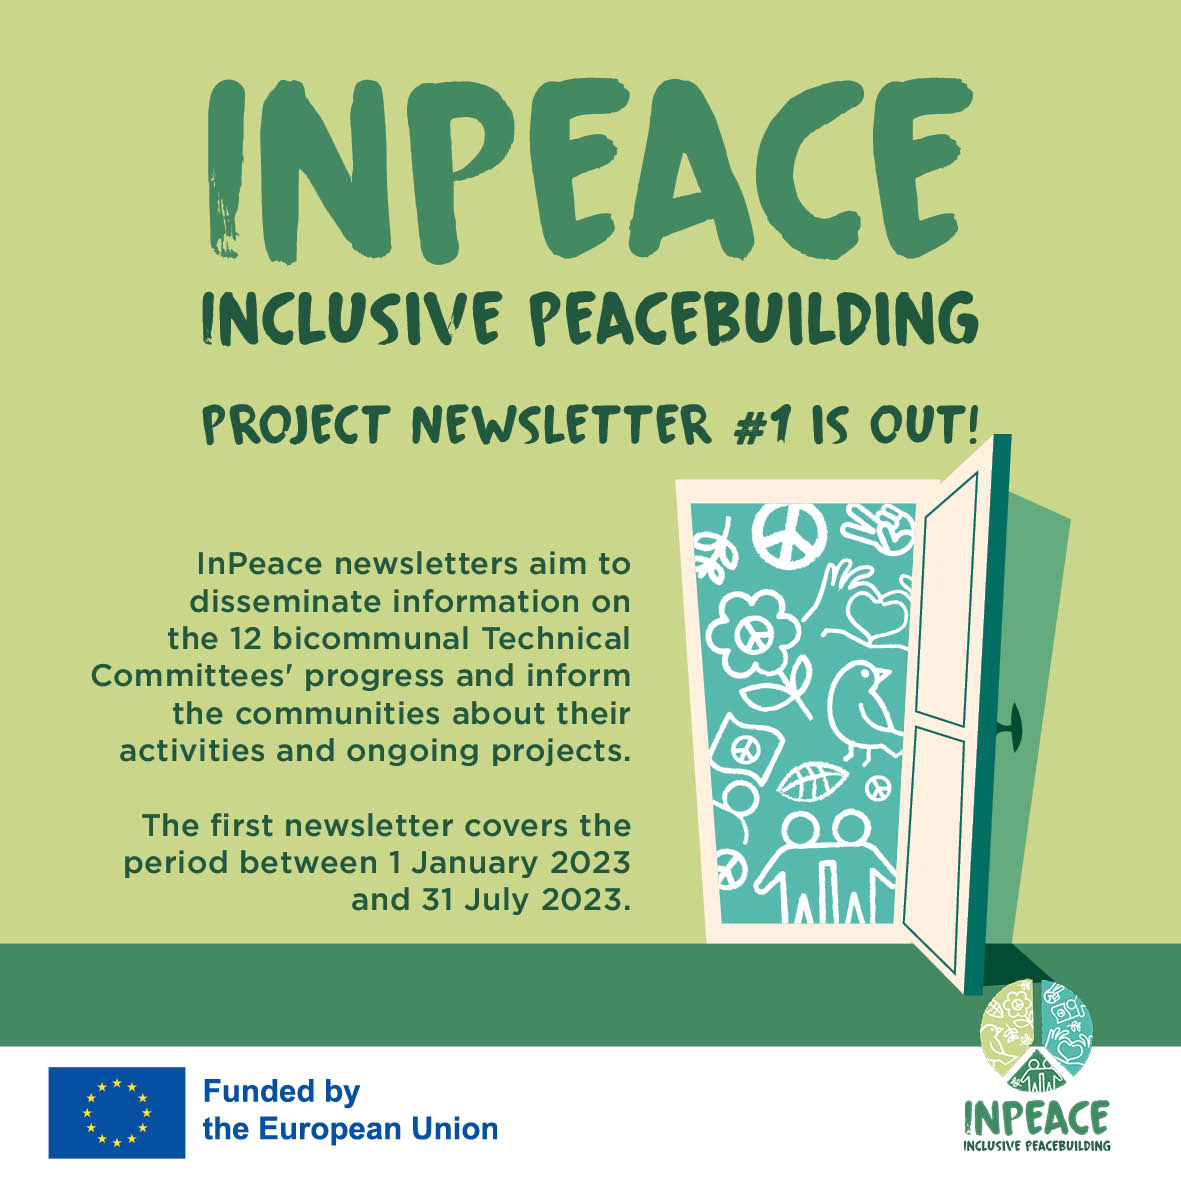 InPeace ‘Inclusive Peacebuilding’ Project Newsletter 